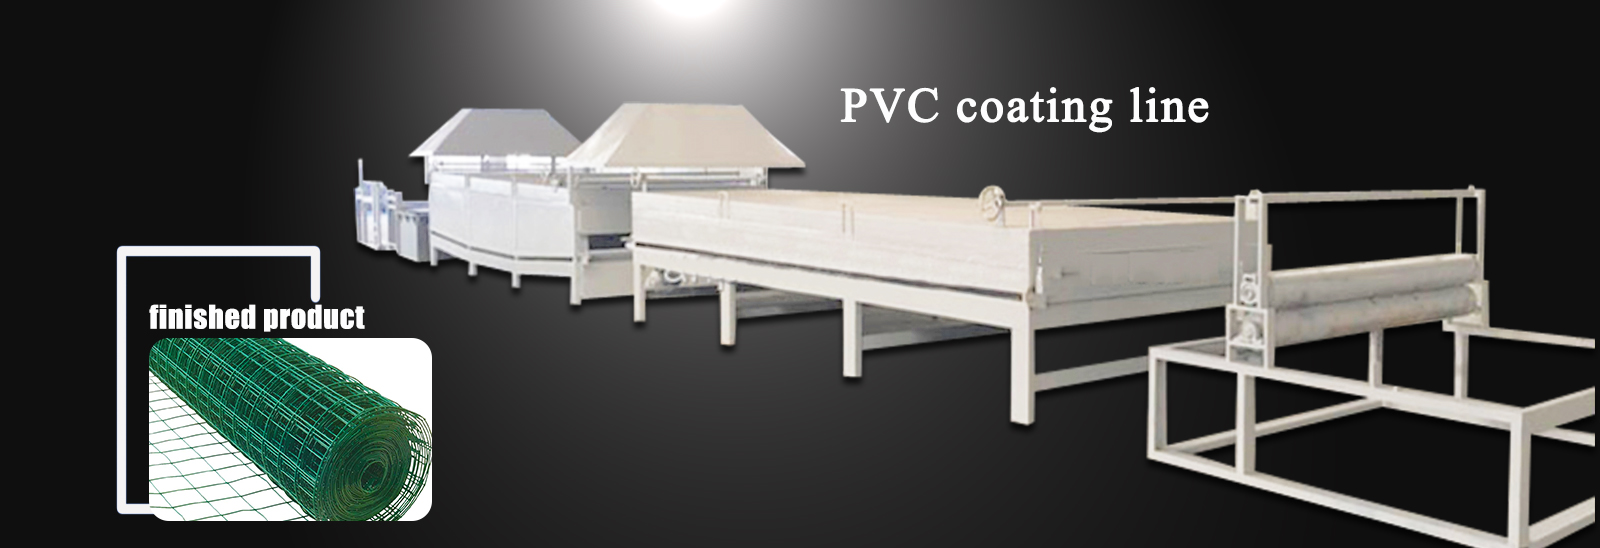 PVC coating line